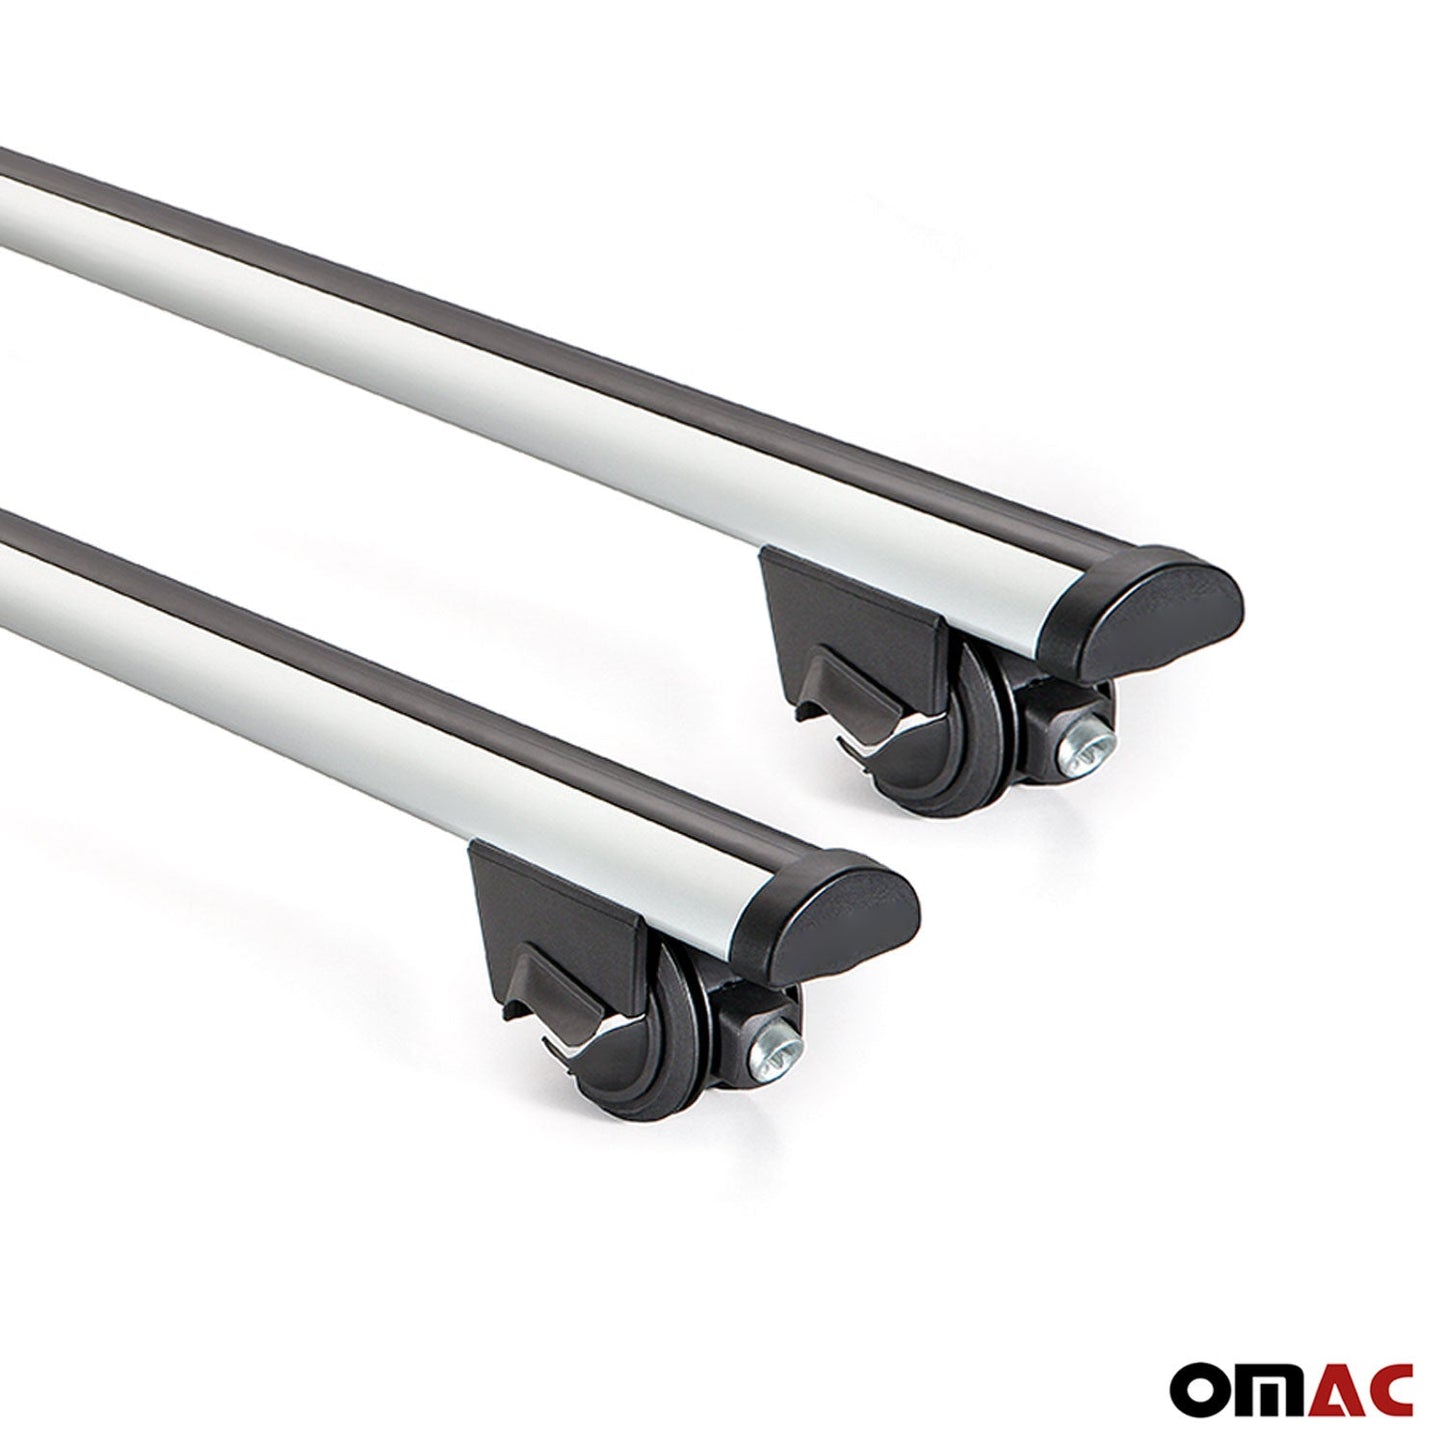 OMAC Roof Rack Cross Bars Lockable for Ford Escape 2008-2012 Aluminium Silver 2Pcs U003893